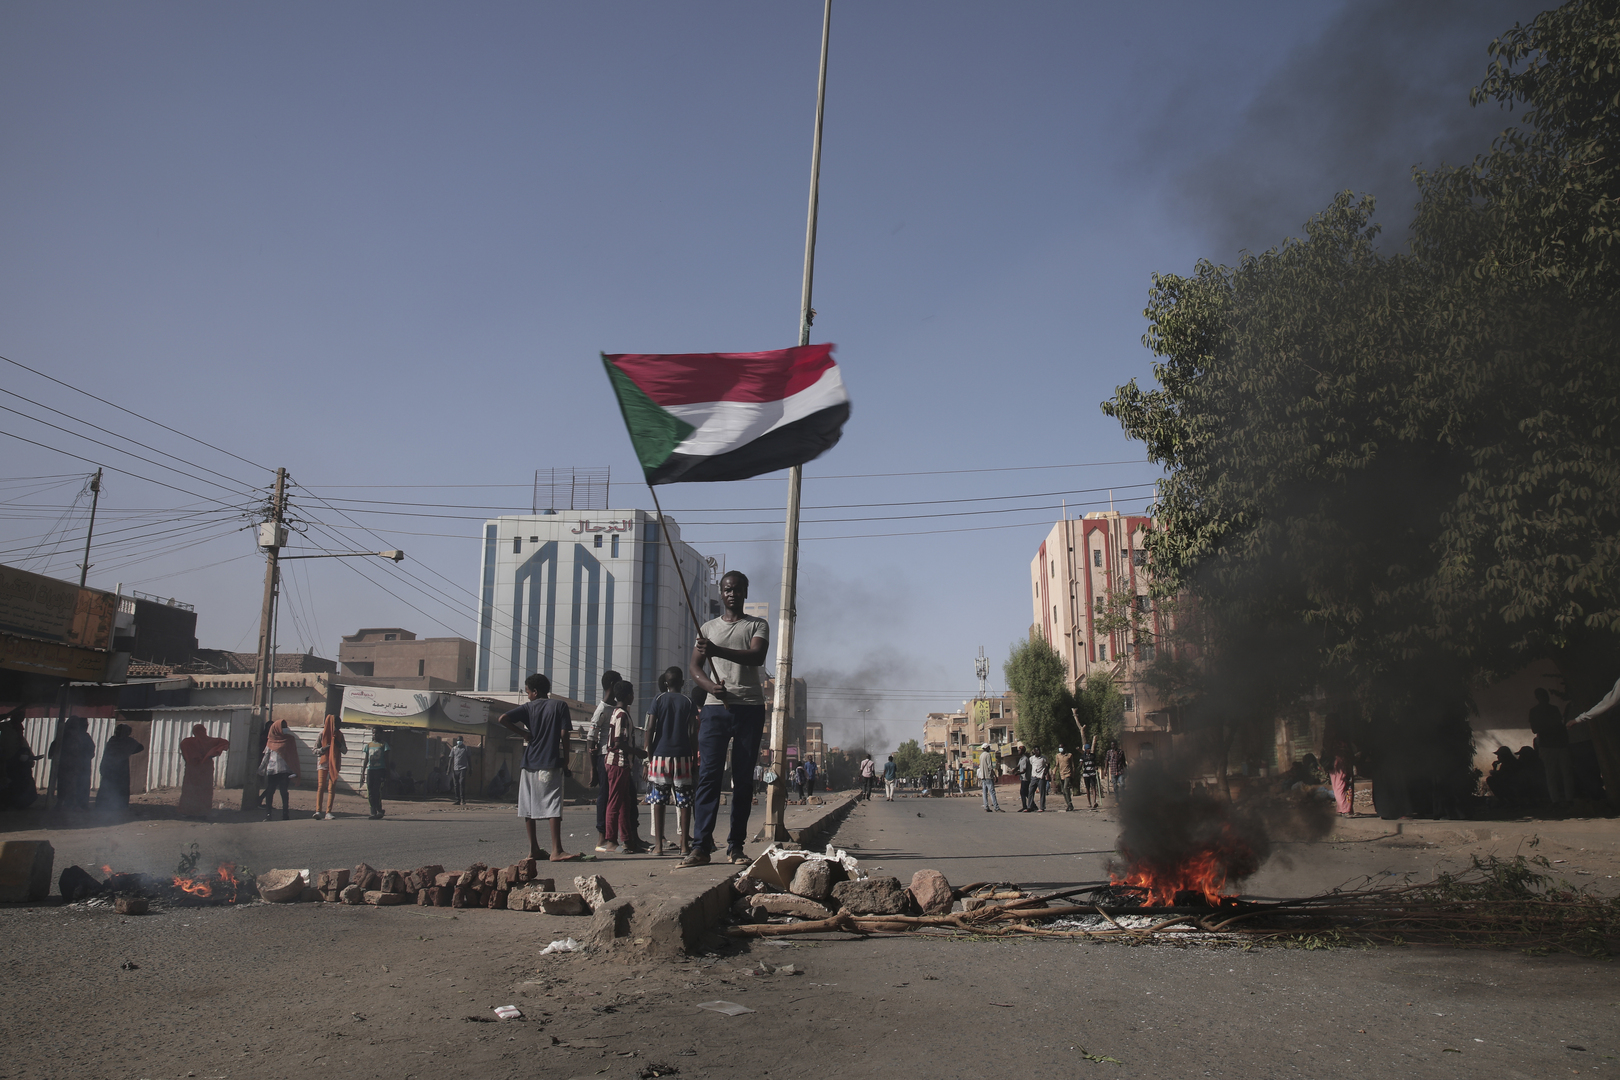 السودان.. حمدوك يعود لرئاسة الحكومة بموجب اتفاق سياسي مع البرهان